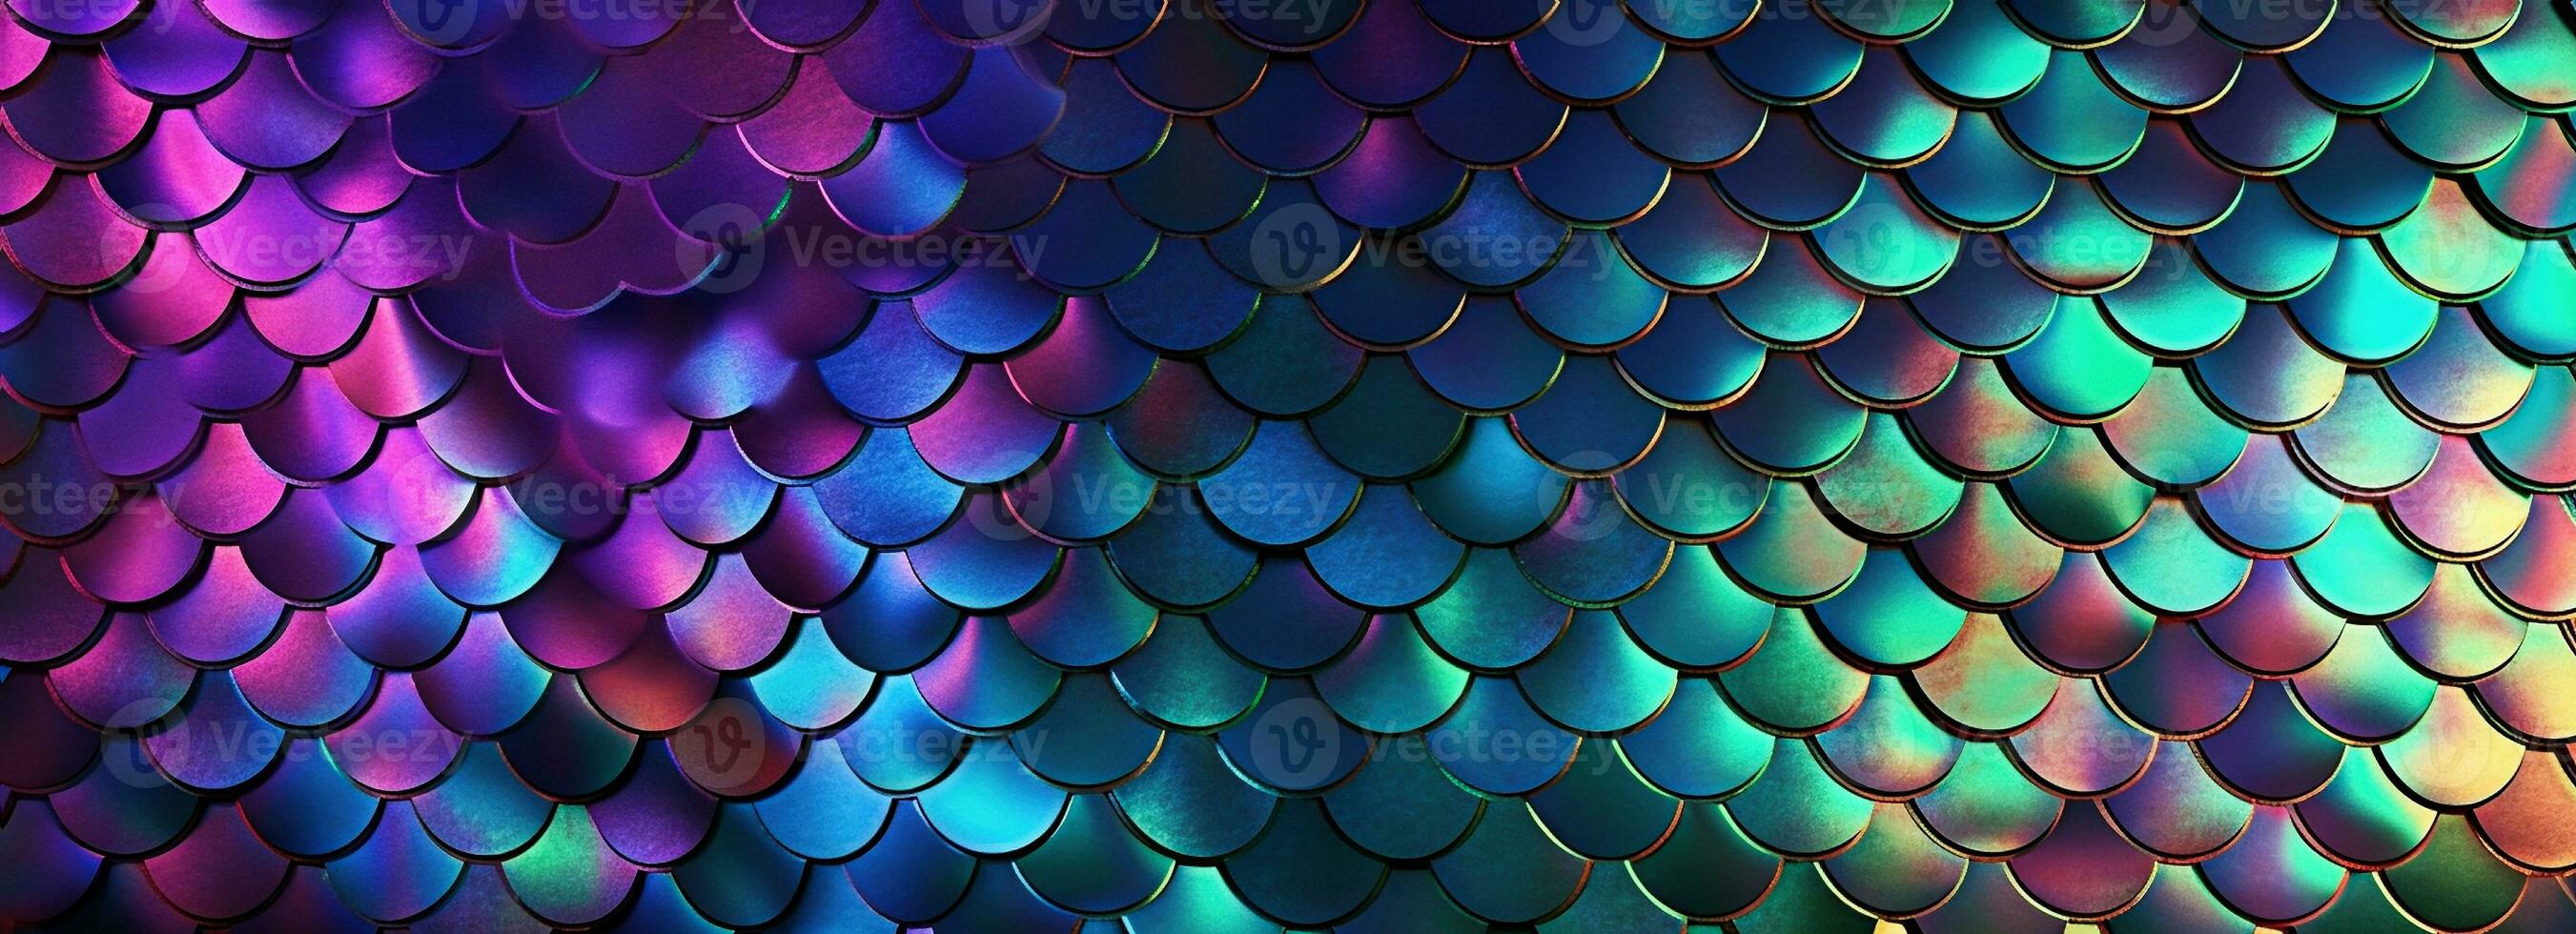 holografiska metall kreativ bakgrund med geometrisk mönster. ultra violett neon ljus holografiska trendig sjöjungfru textur baner. stiliserade orm eller fisk eller sjöjungfru vågar. foto